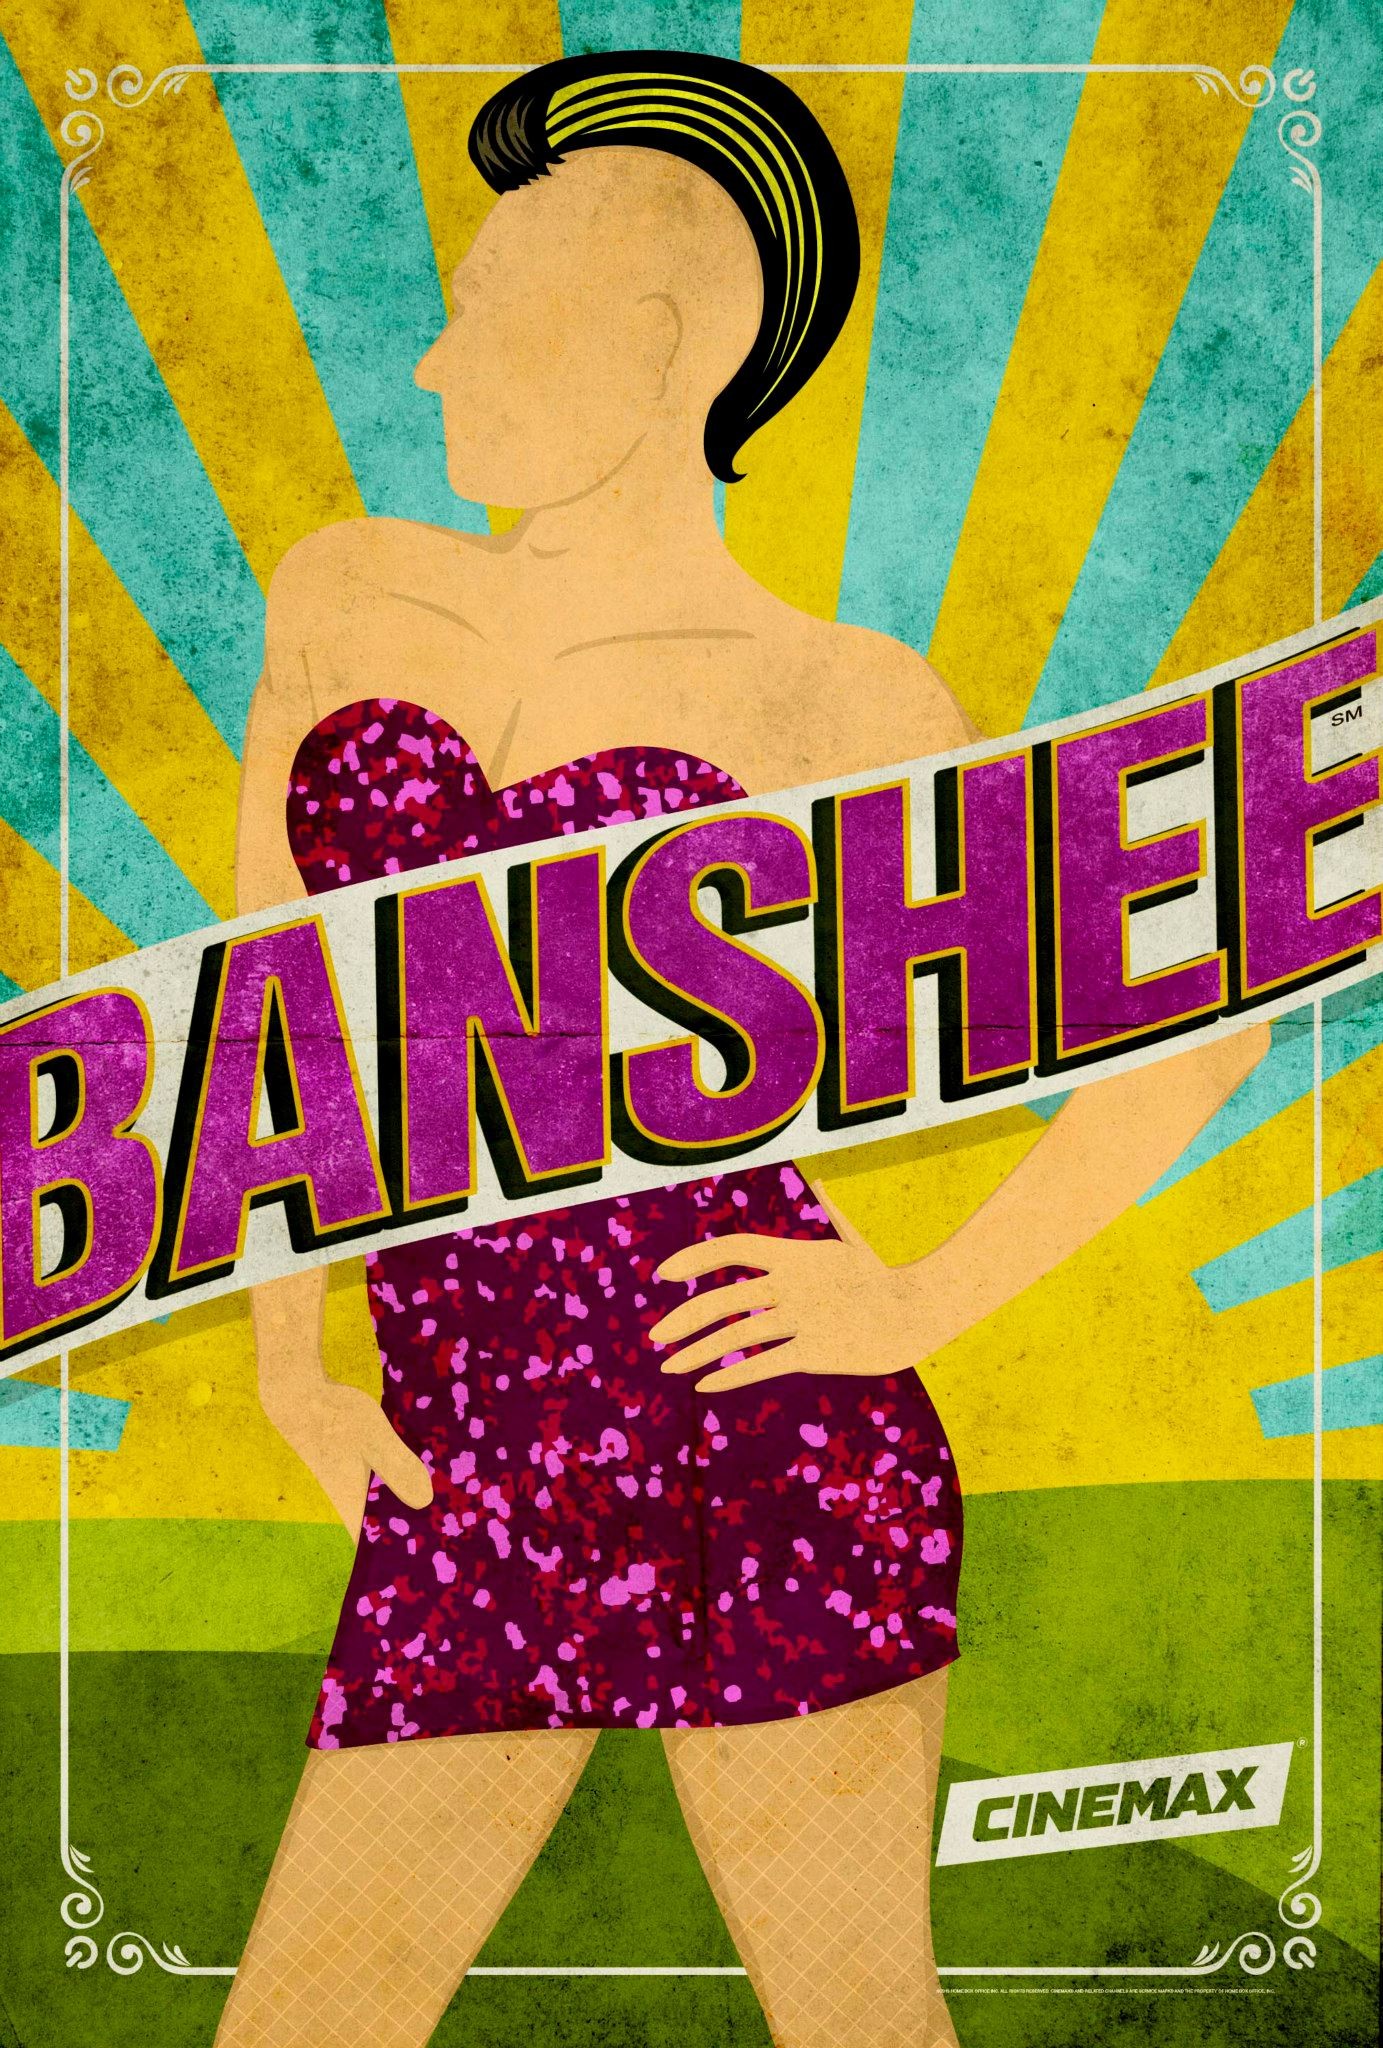 Mega Sized TV Poster Image for Banshee (#4 of 18)